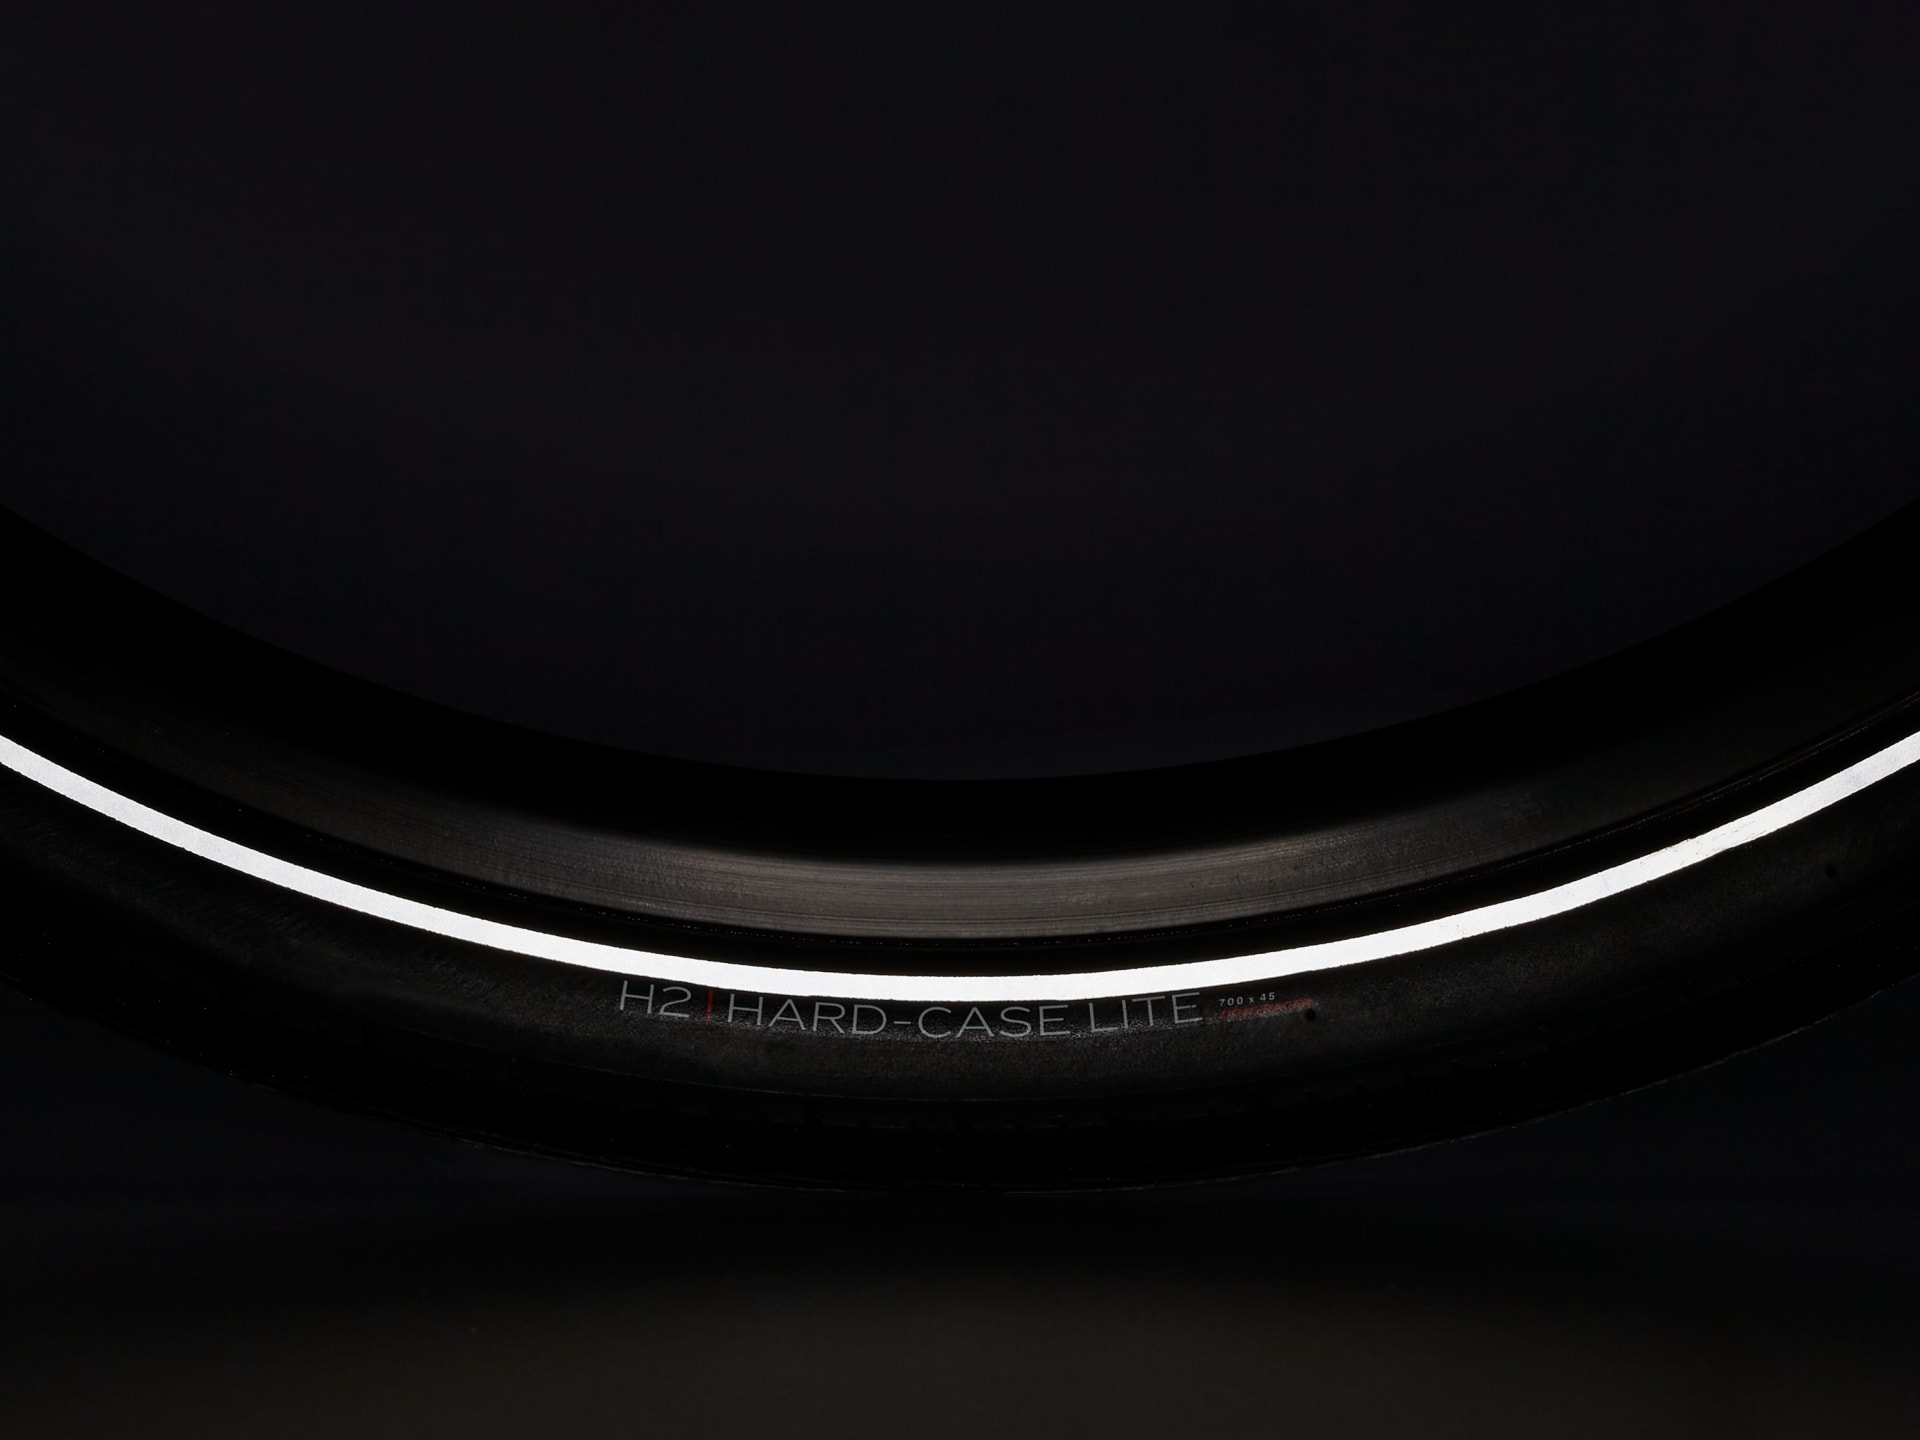 Bontrager H2 Hard-Case Lite Reflective Hybrid Tire